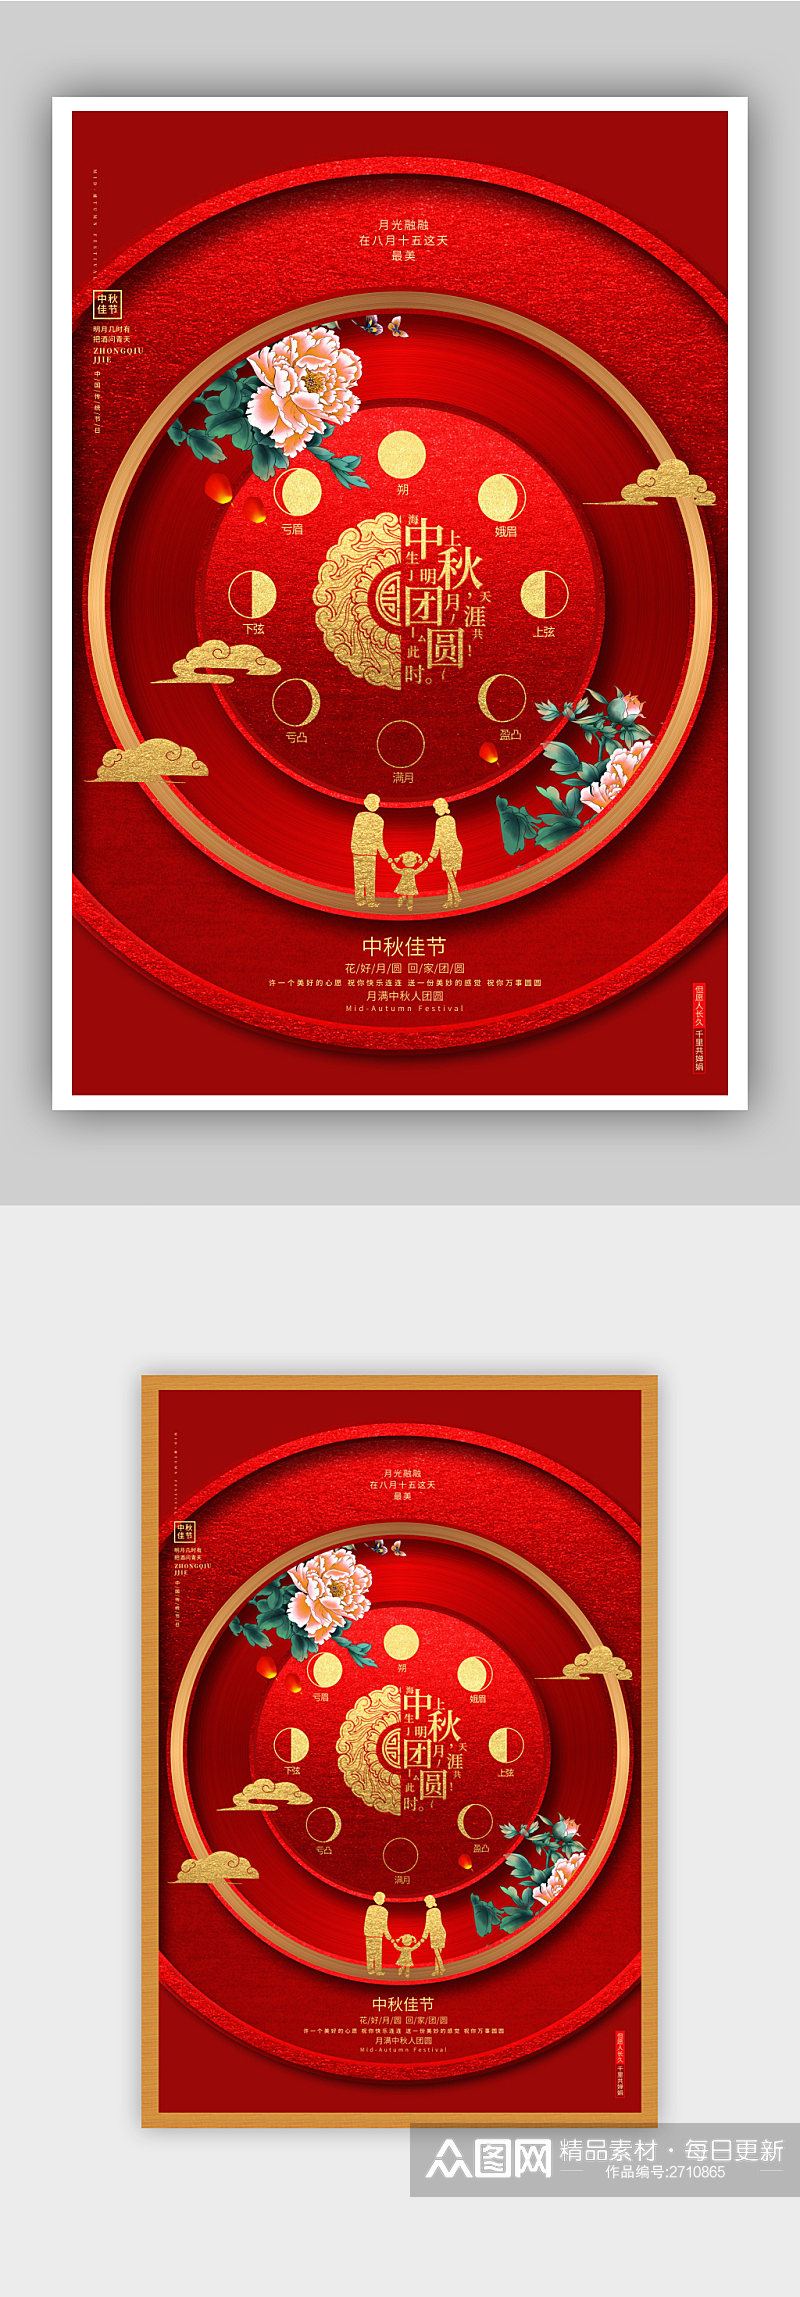 红色创意中秋节中秋团圆海报设计素材